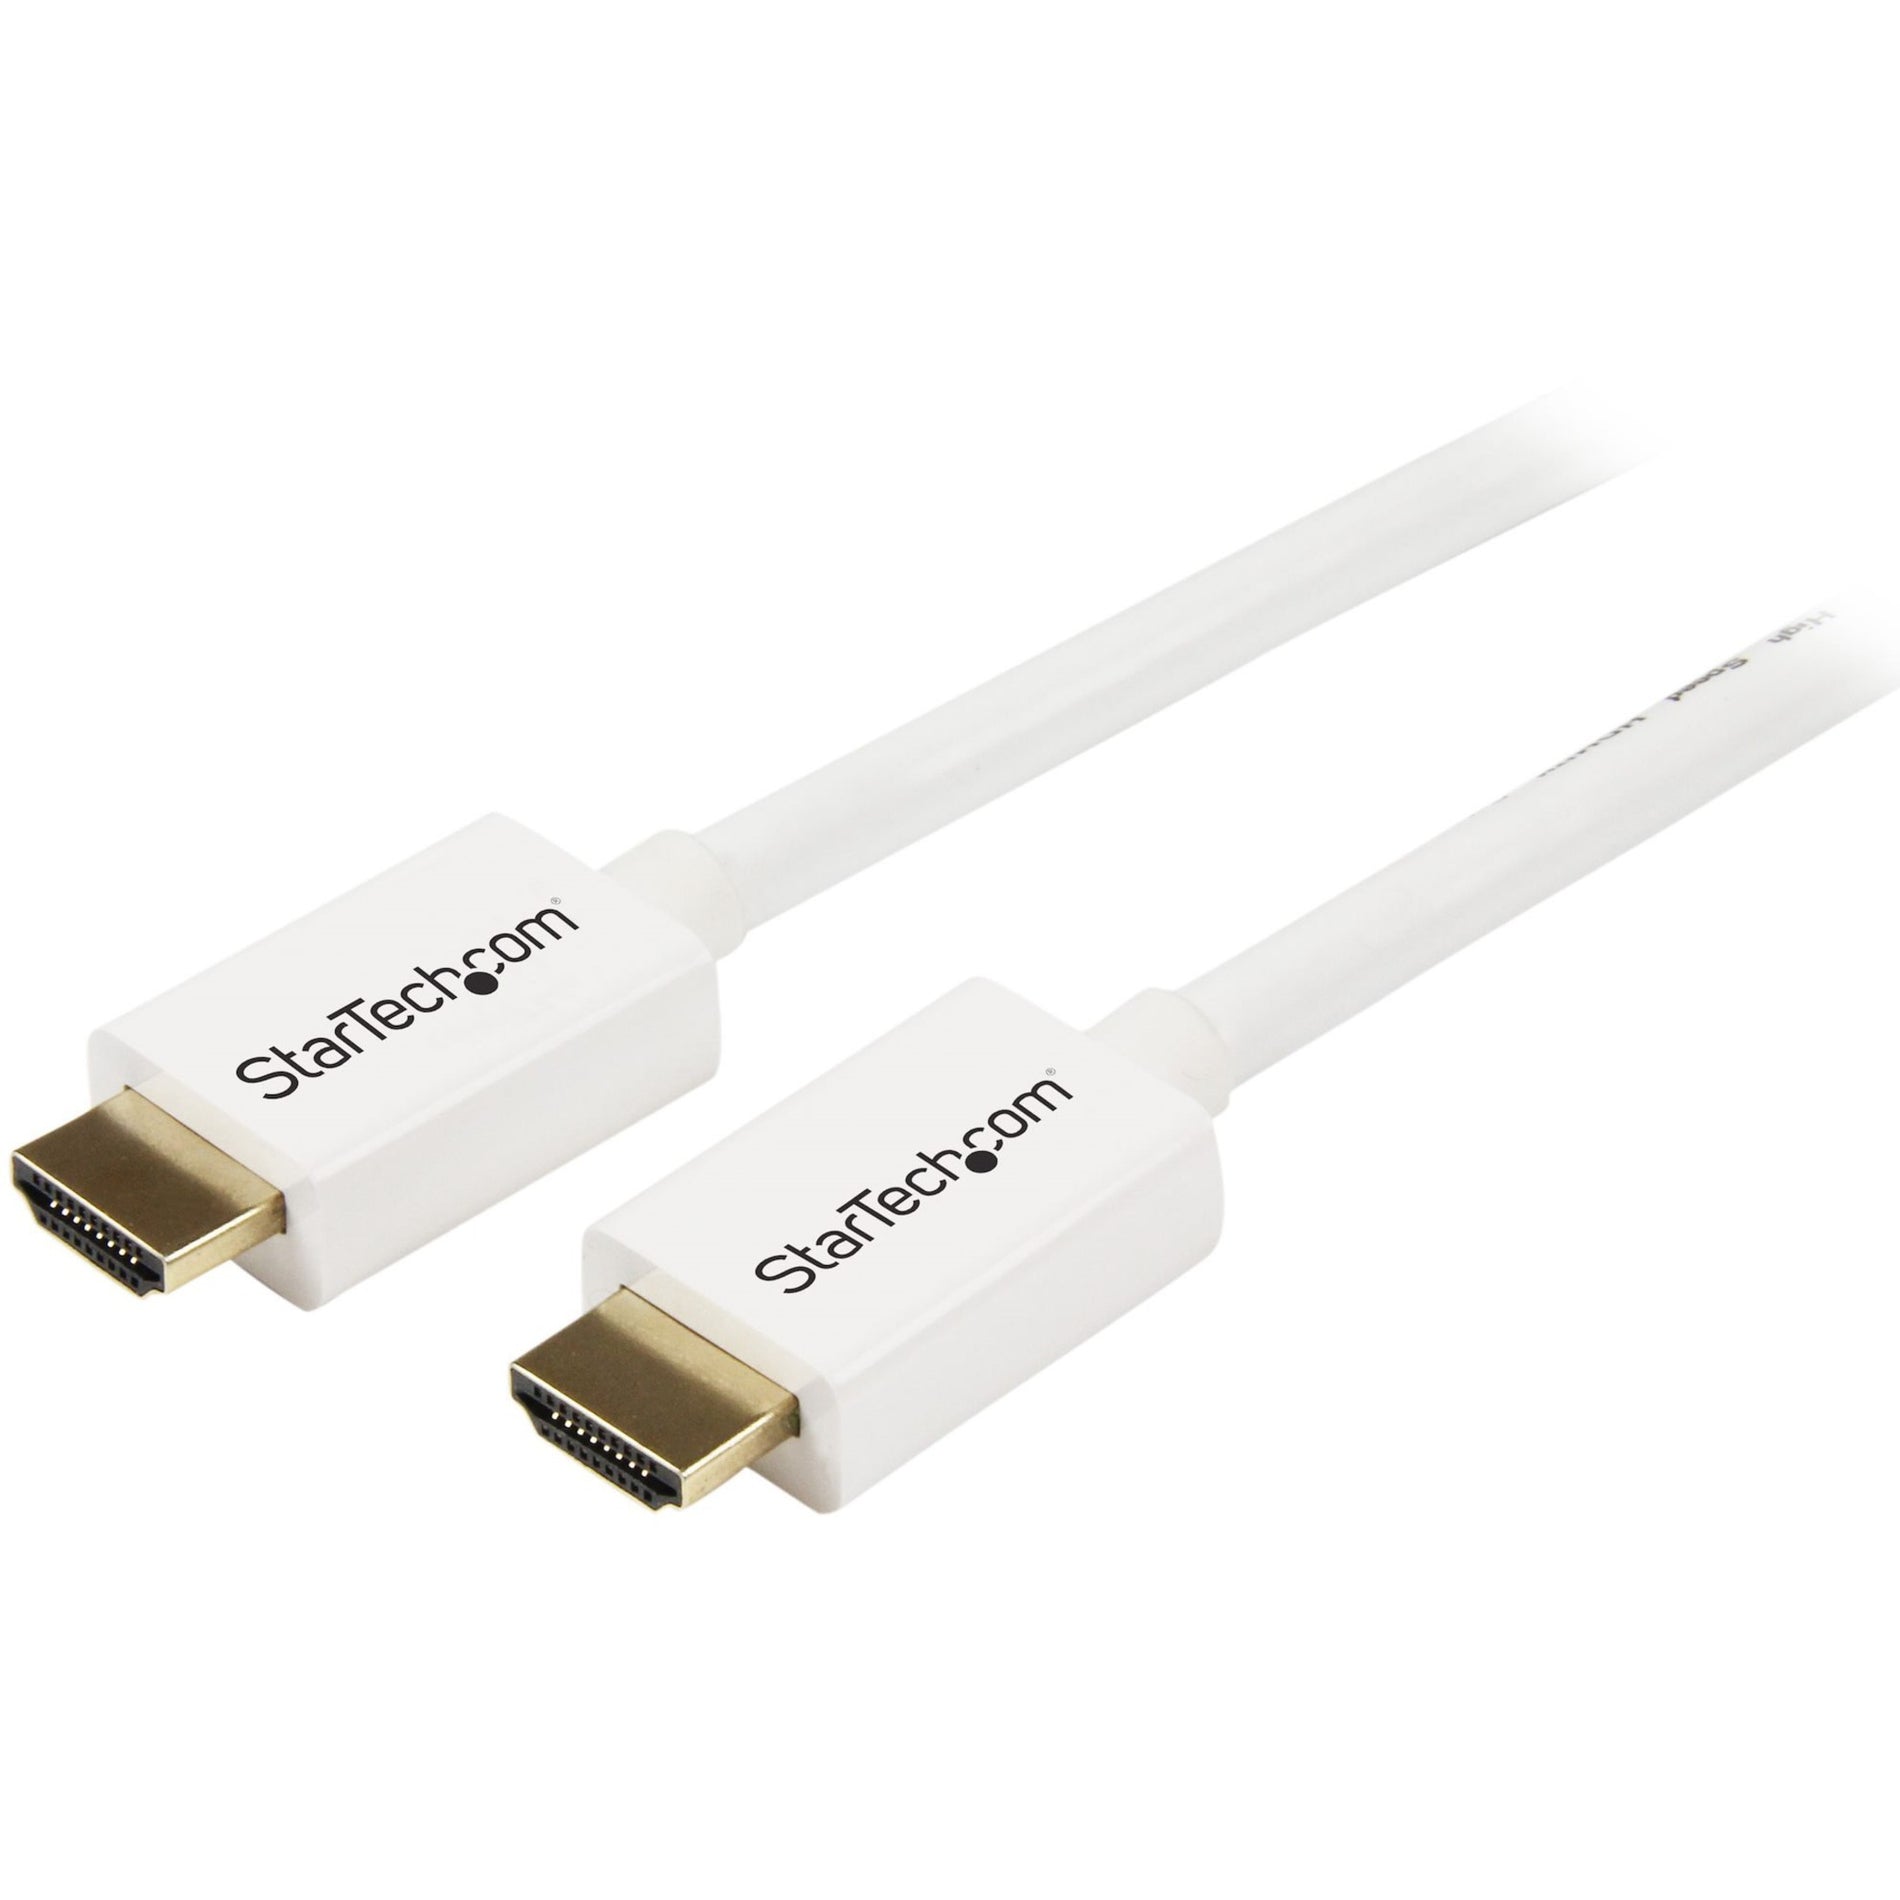 品牌：StarTech.com 高清晰度 HDMI 至 HDMI 电缆 - HDMI 至 HDMI - M/M 防腐蚀 10.2 Gbit/s 数据传输速率 白色 CL3 壁内高清 HDMI 电缆 - 5 米 (16 英尺)